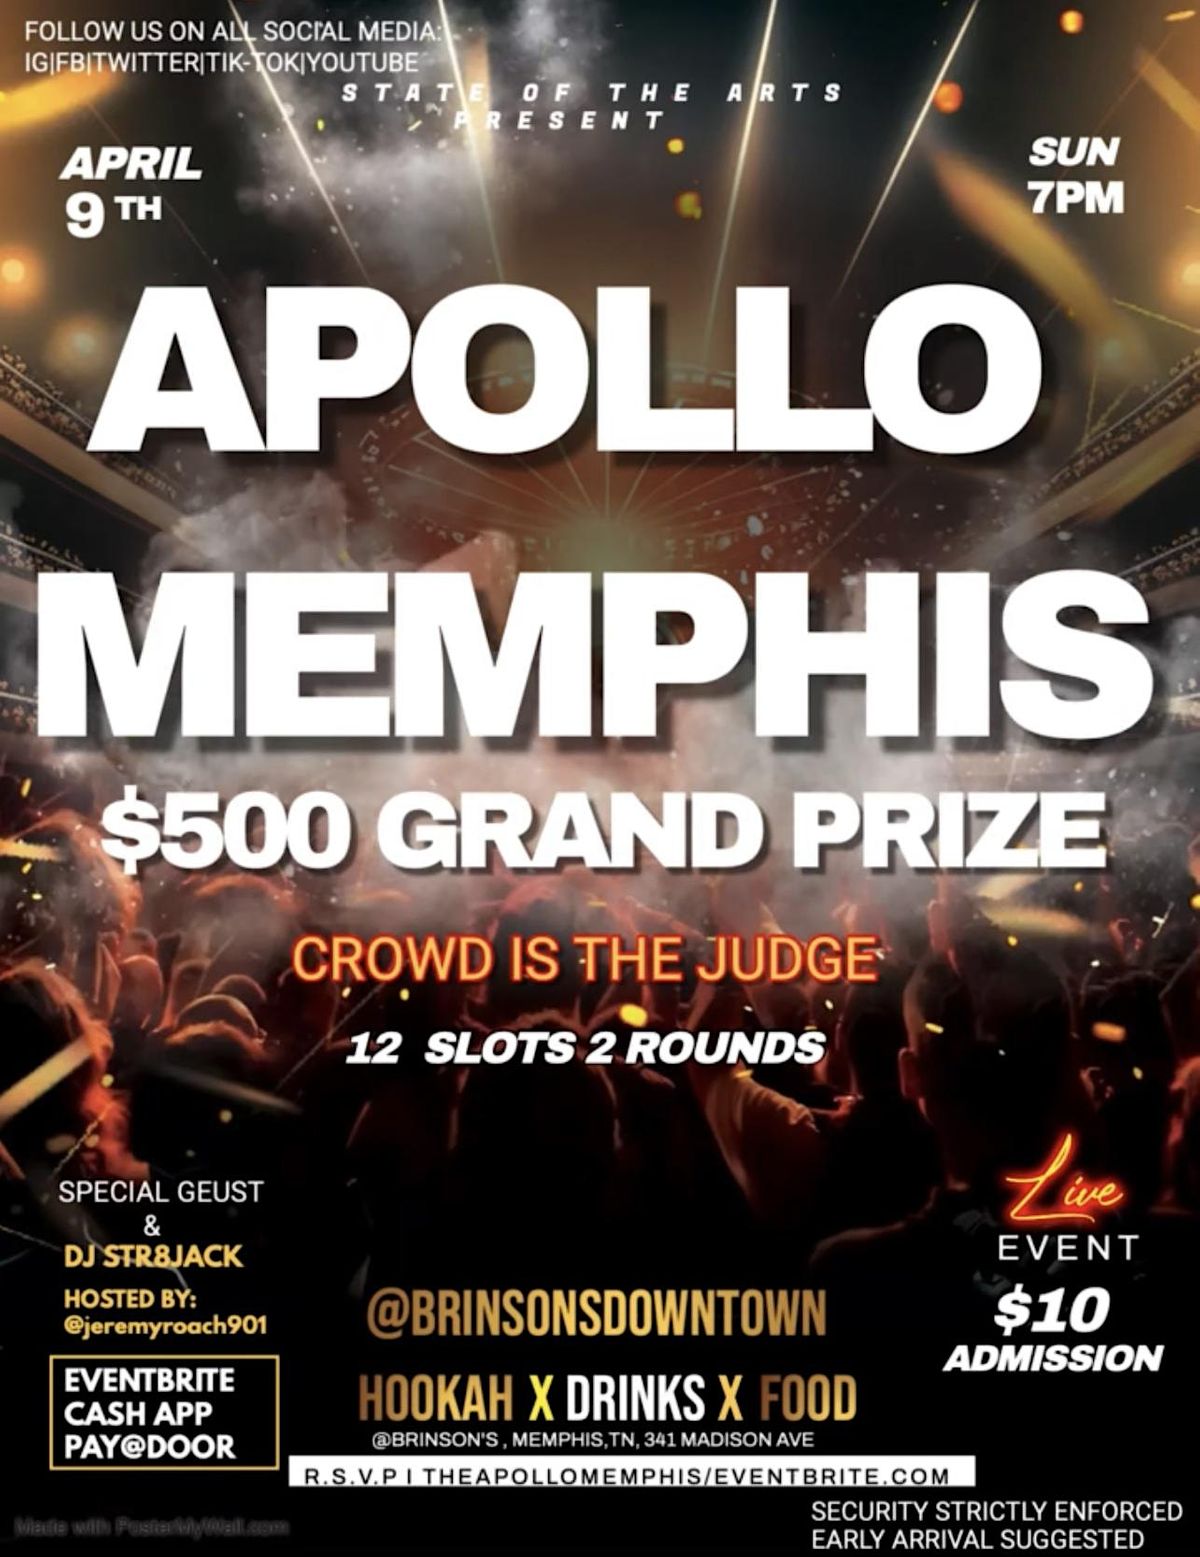 The Apollo MEMPHIS $500 grand prize artist competition